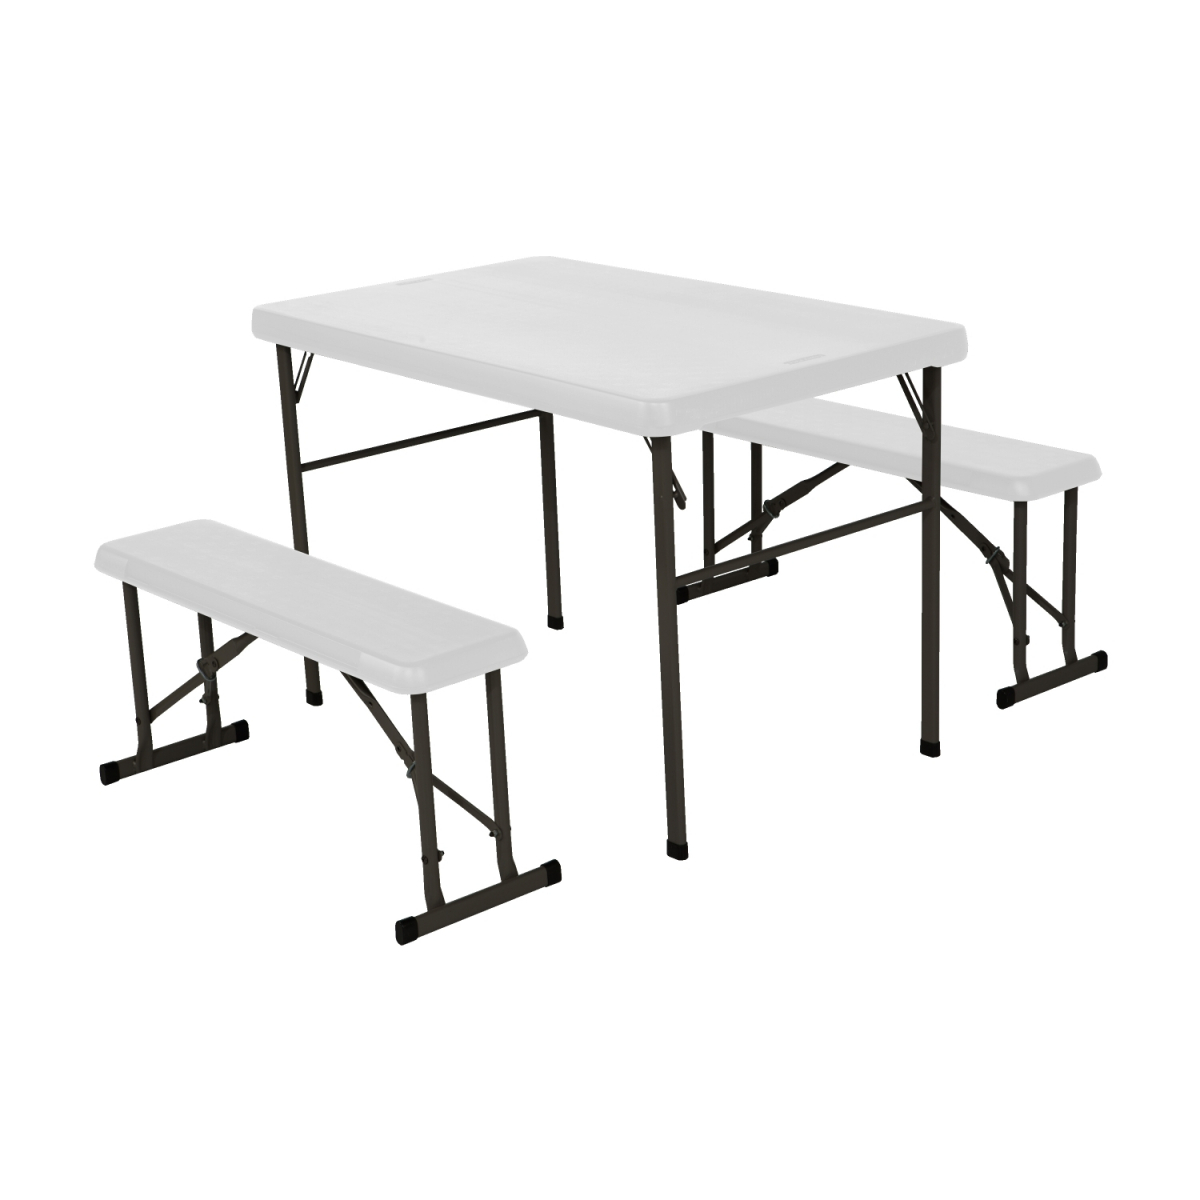 Campingový stůl + 2x laviceLIFETIME 80353 / 80352